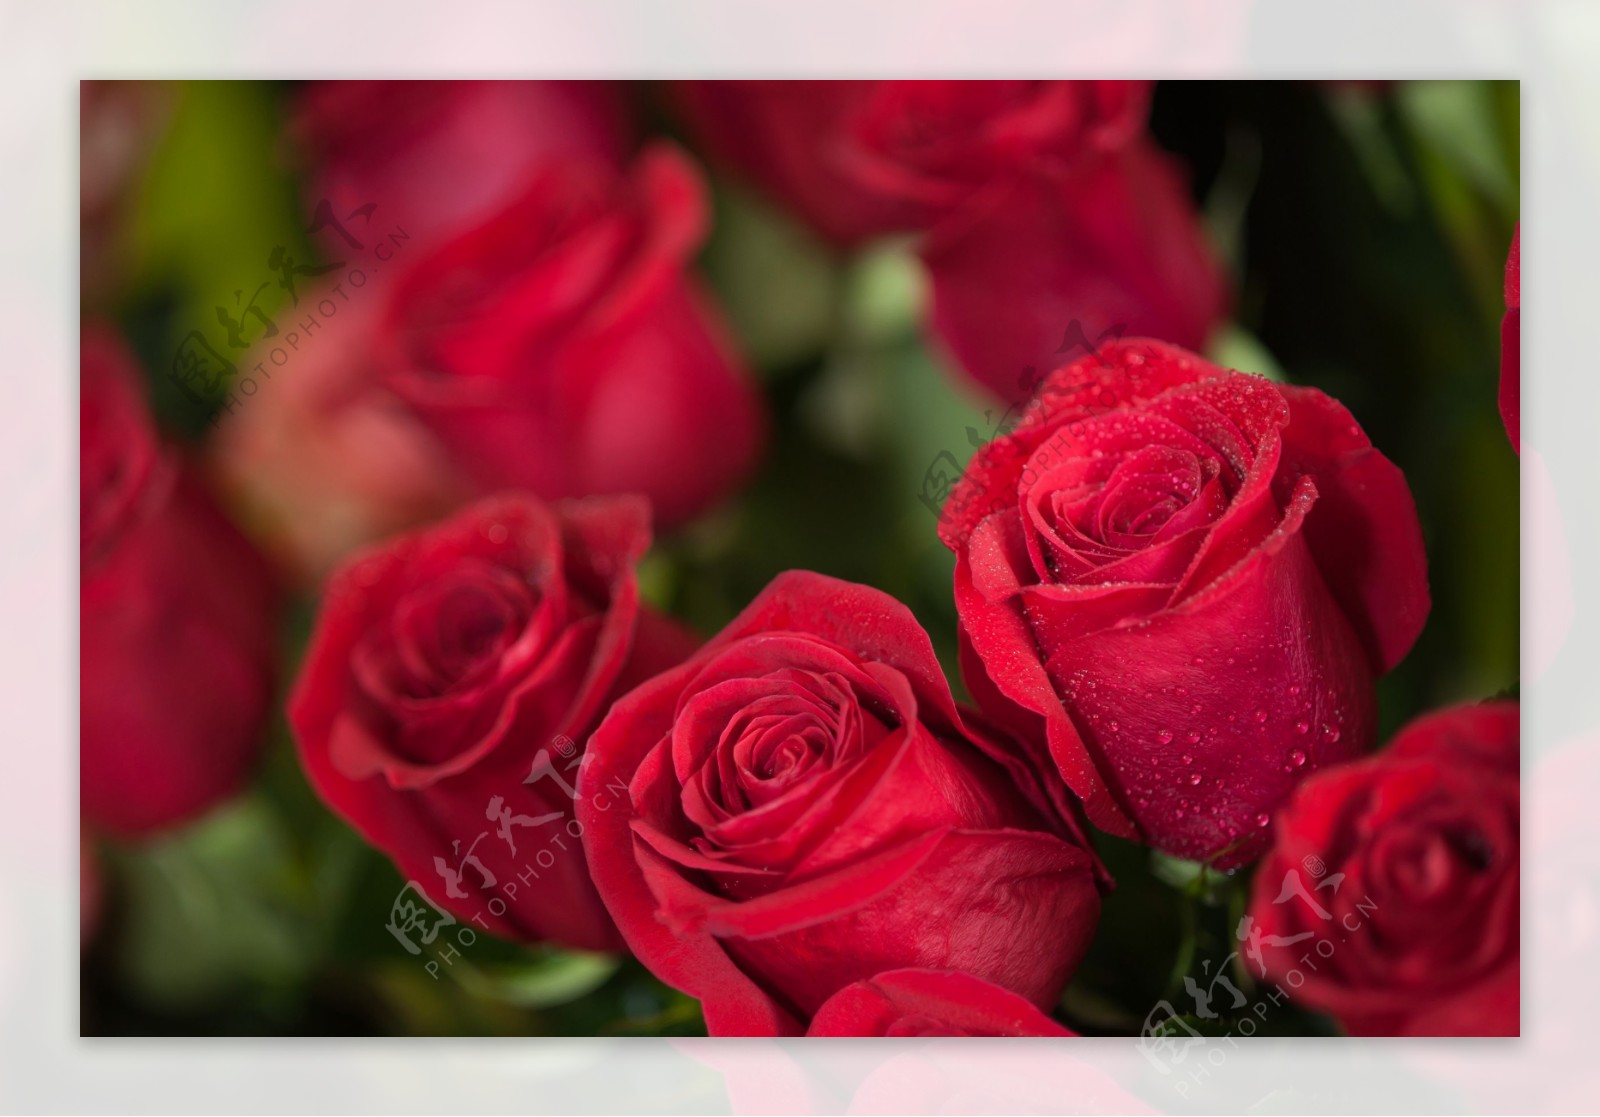 漂亮玫瑰花朵图片